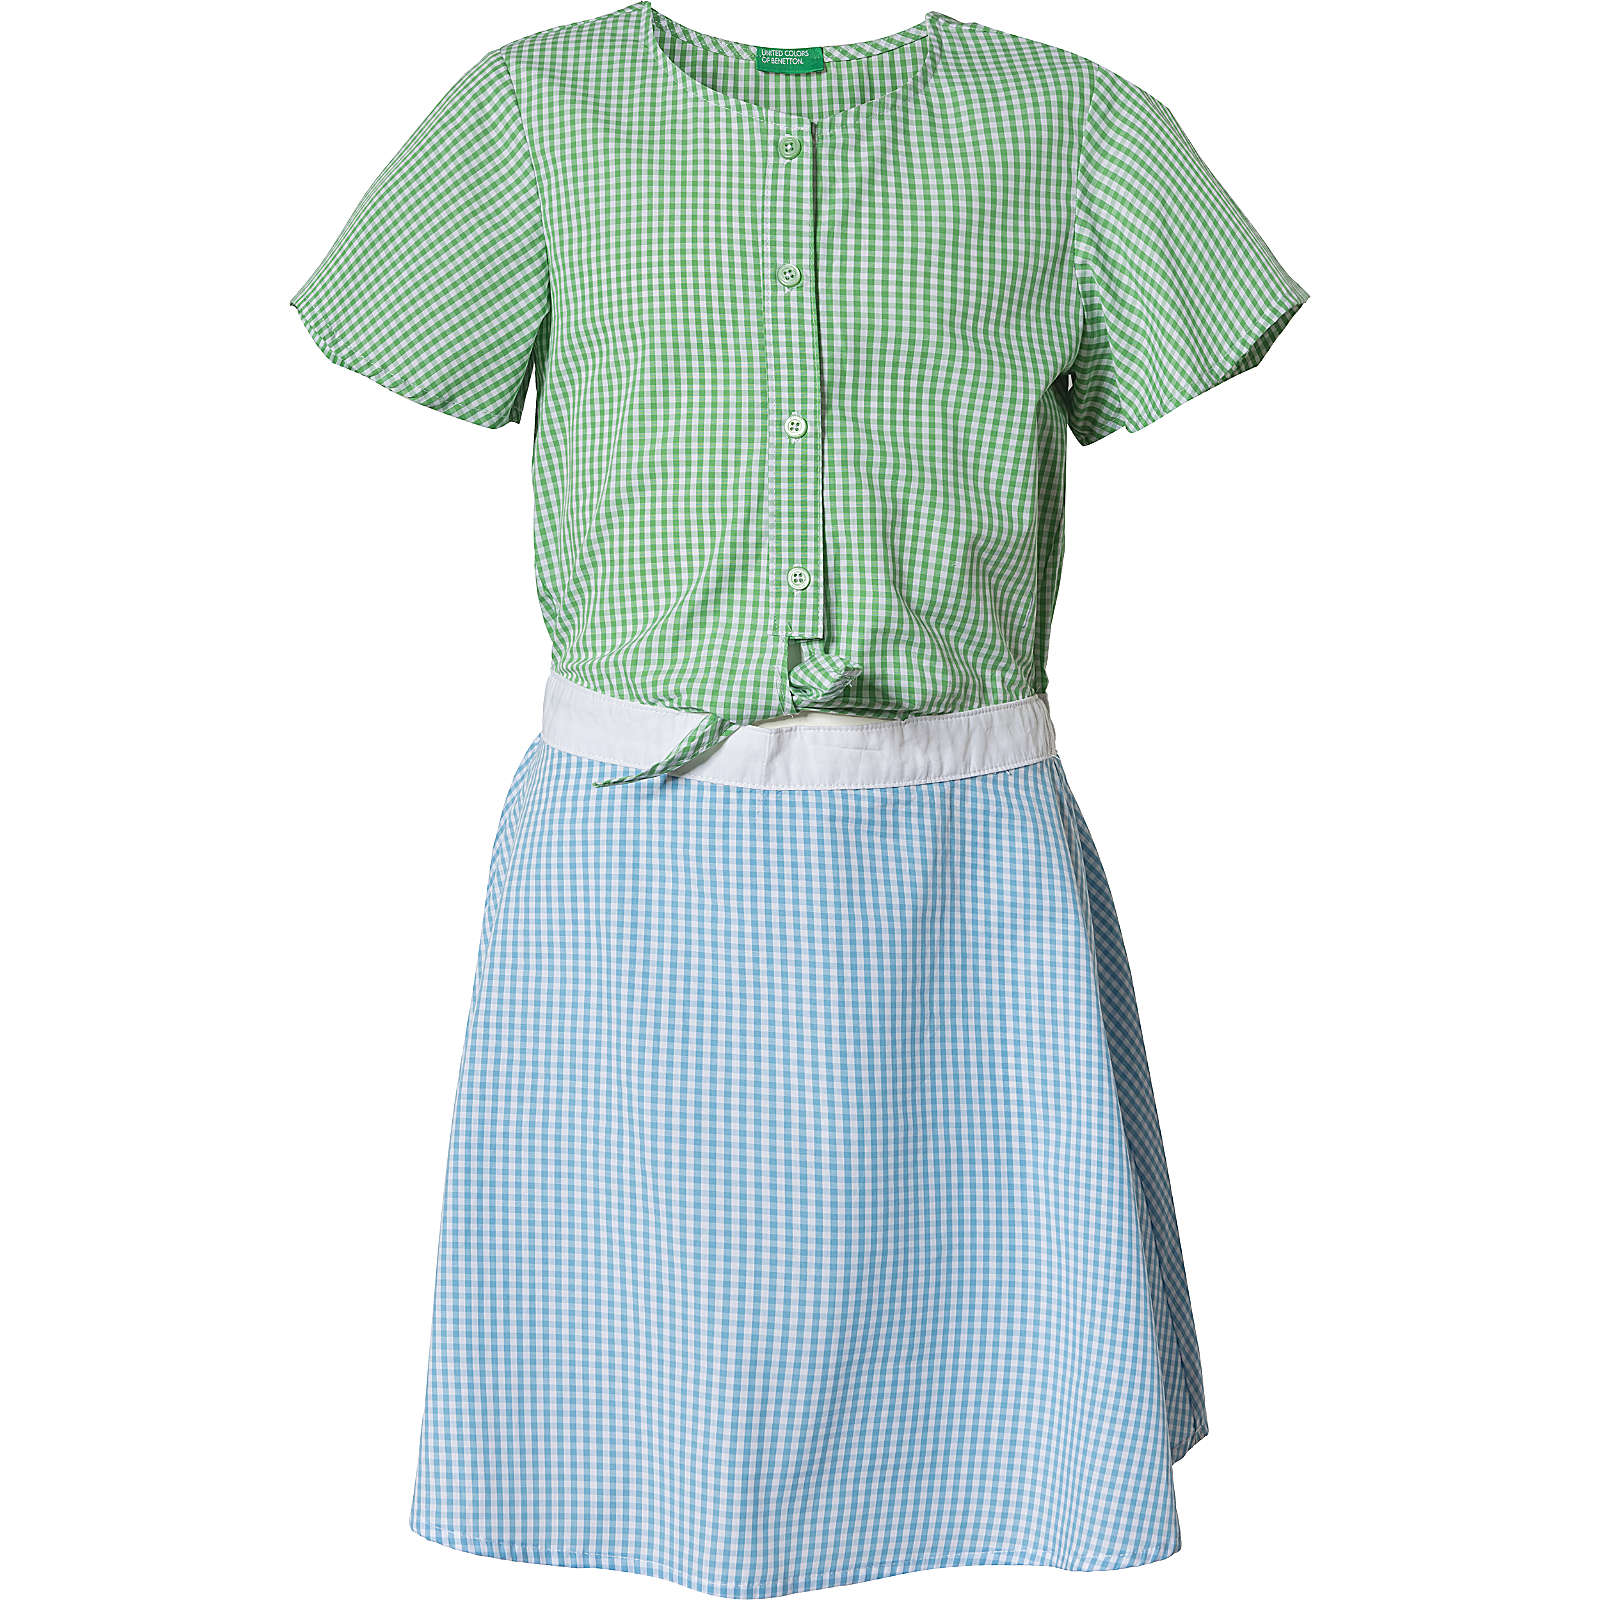 United Colors of Benetton Kinder Kleid mehrfarbig Mädchen Gr. 158